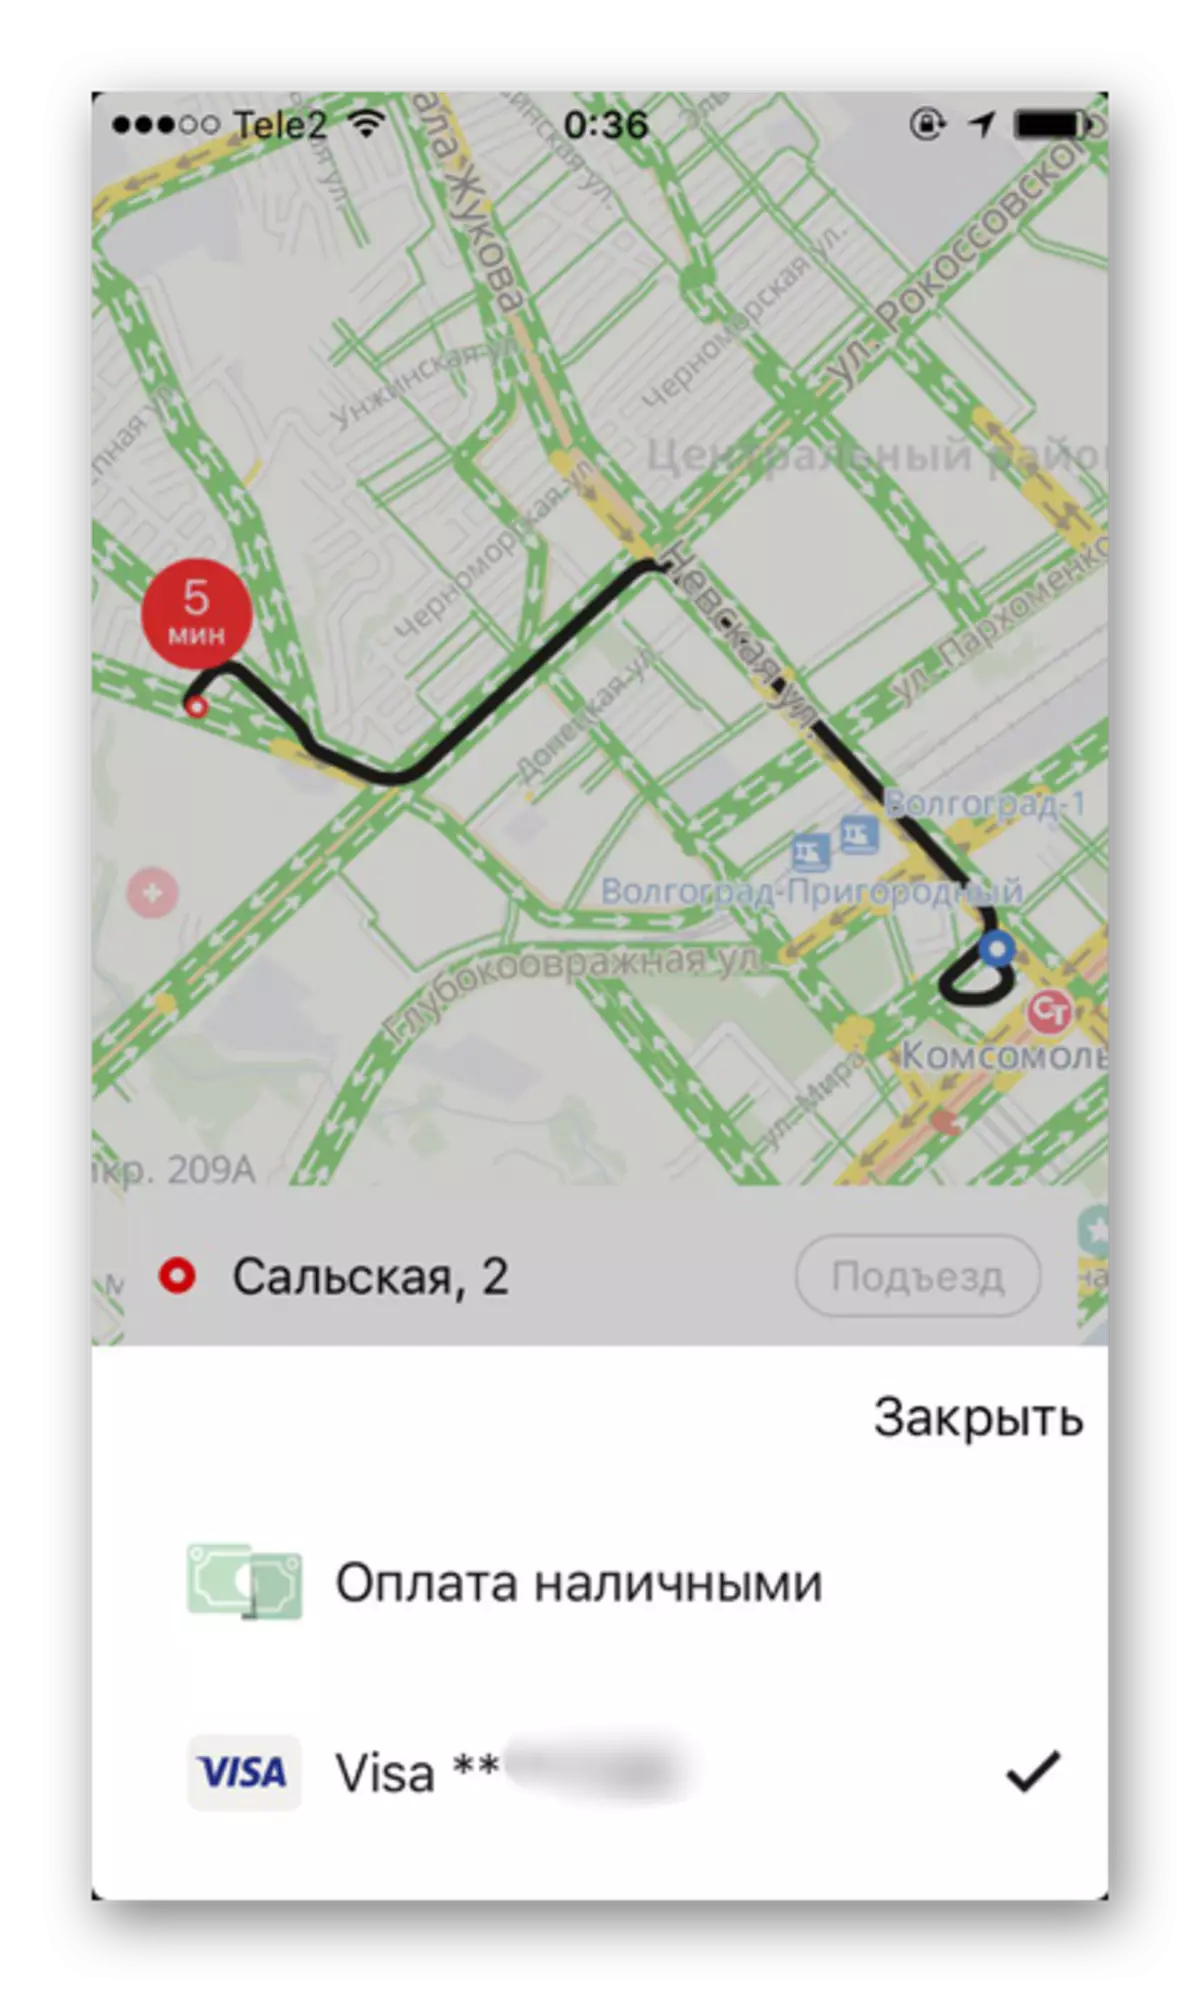 Yandexe.taxi кушымтасында кулланылган түләү ысуллары iPhone'да кулланыла